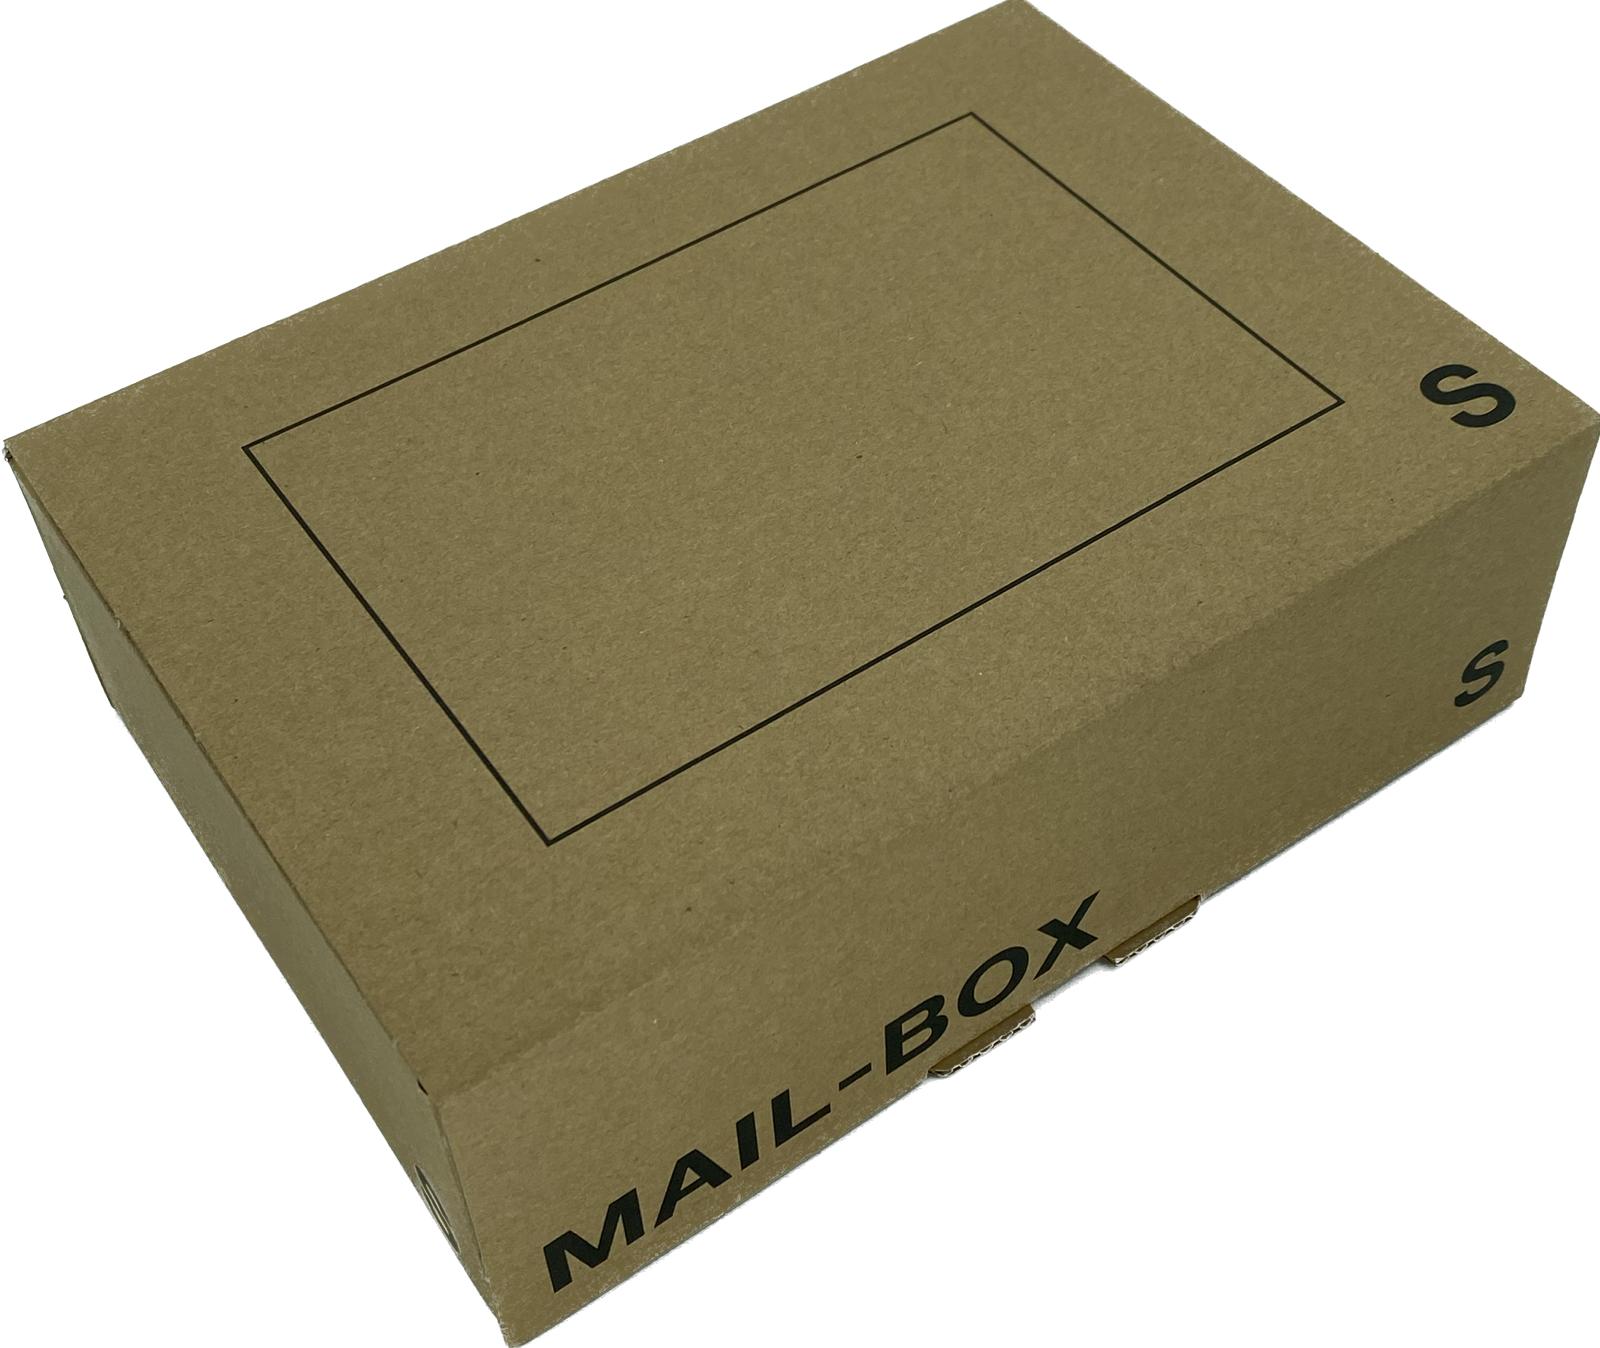 Mailbox-Karton S, 255 x 185 x 85mm, braun